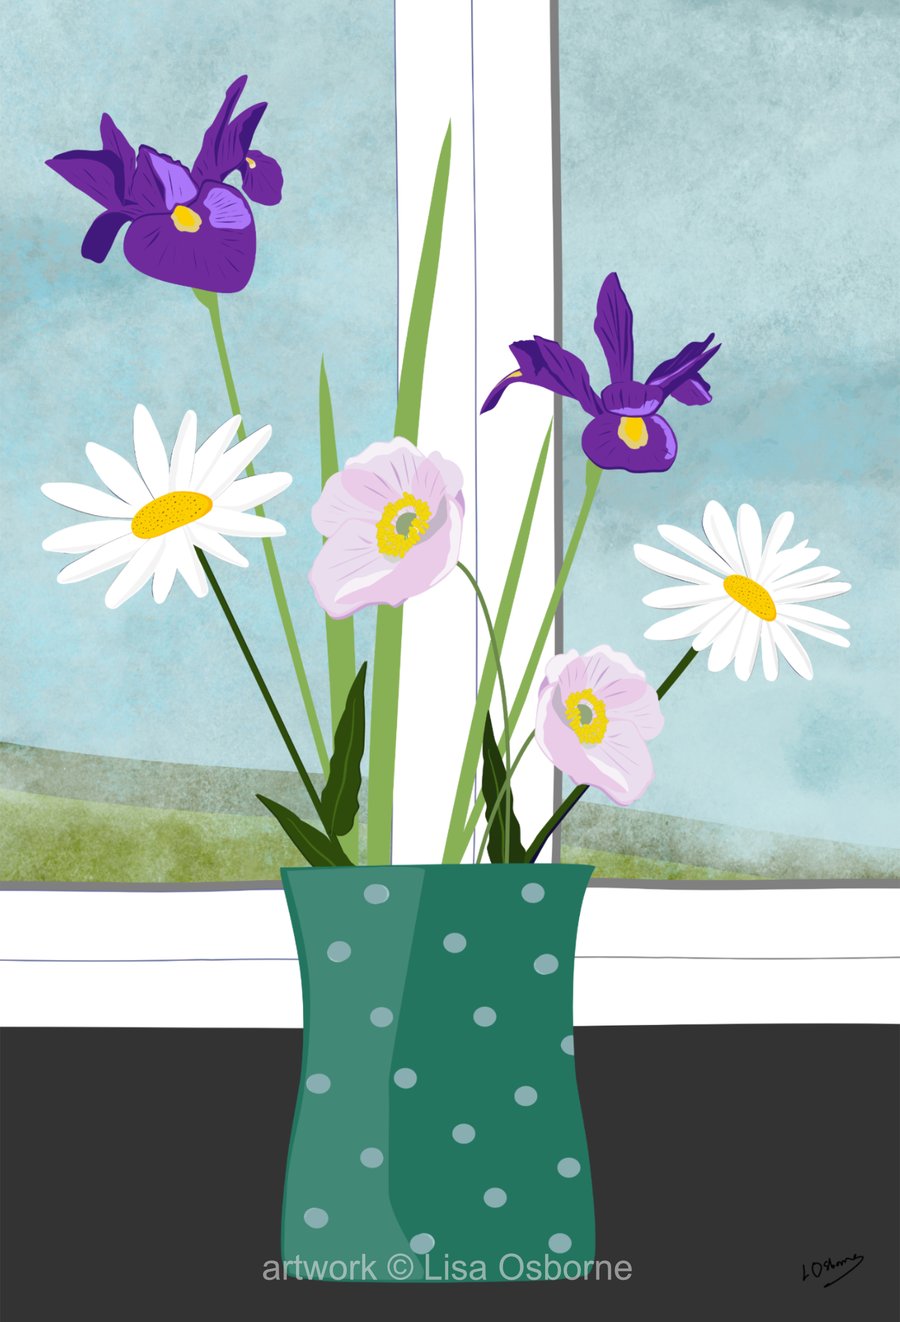 Irises and white daisies - flower art print - summer flowers